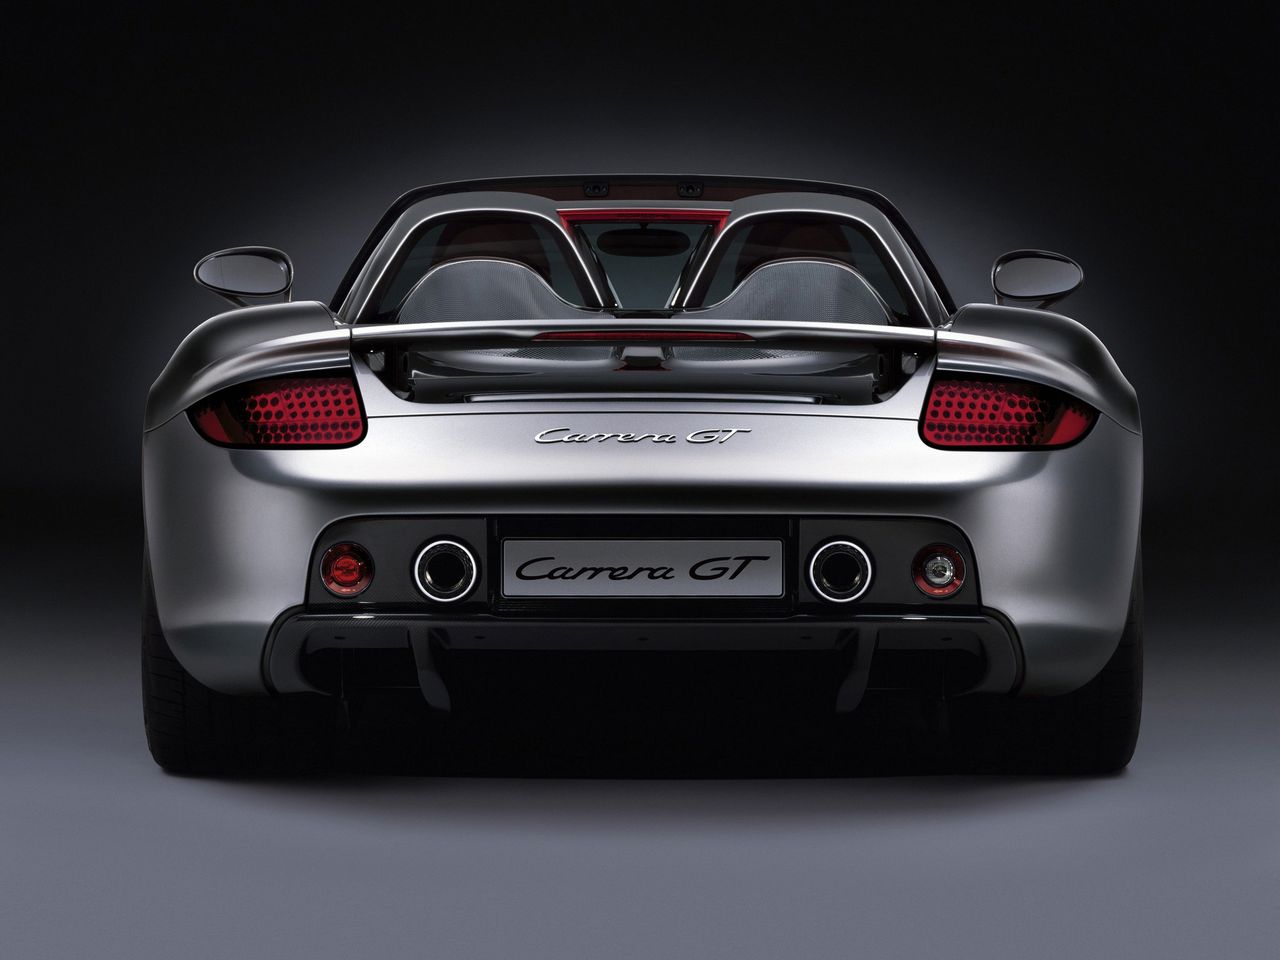 Produkcję Carrery GT zakończono w roku 2006. Powstało łącznie nieco ponad 1270 egzemplarzy. Wstępnie Porsche planowało wyprodukować 1500 sztuk tego modelu, ale plany zostały zmienione w 2005 roku, gdy okazało się, że w USA zostaną zmienione przepisy dotyczące poduszek powietrznych.